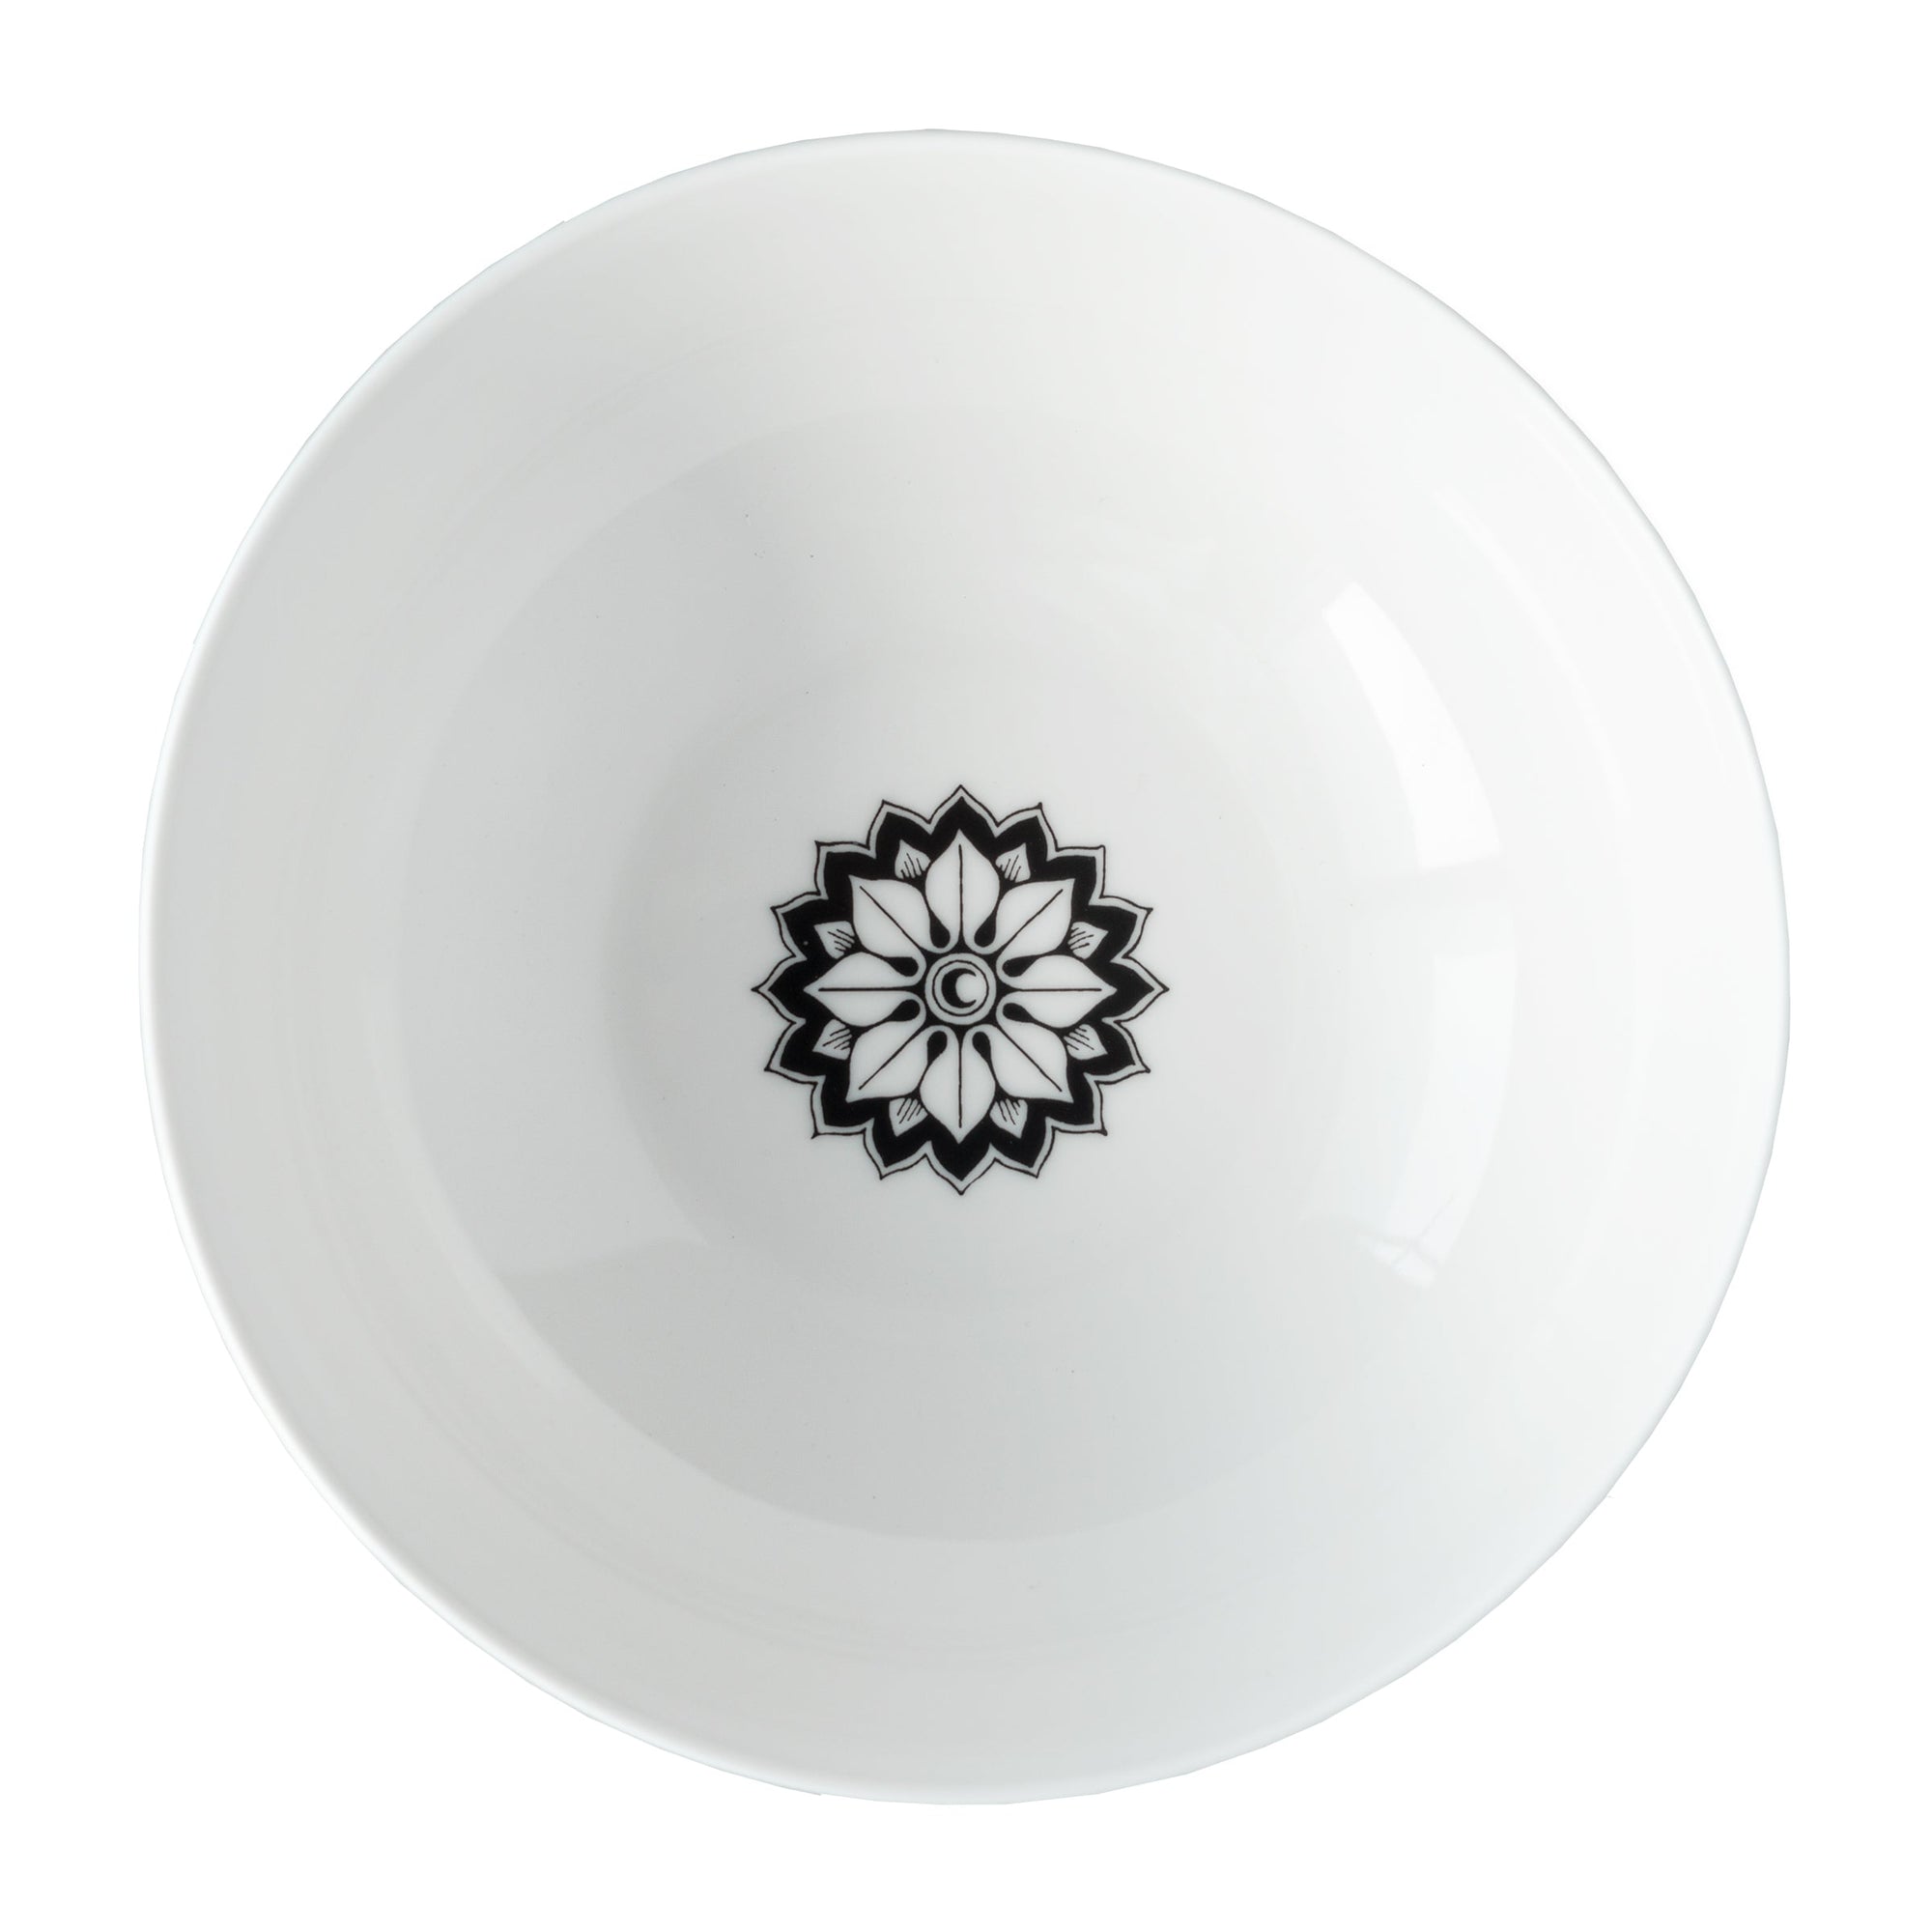 Marrakech Vegetable Serving Bowl in black and white high-fired porcelain dinnerware- Caskata